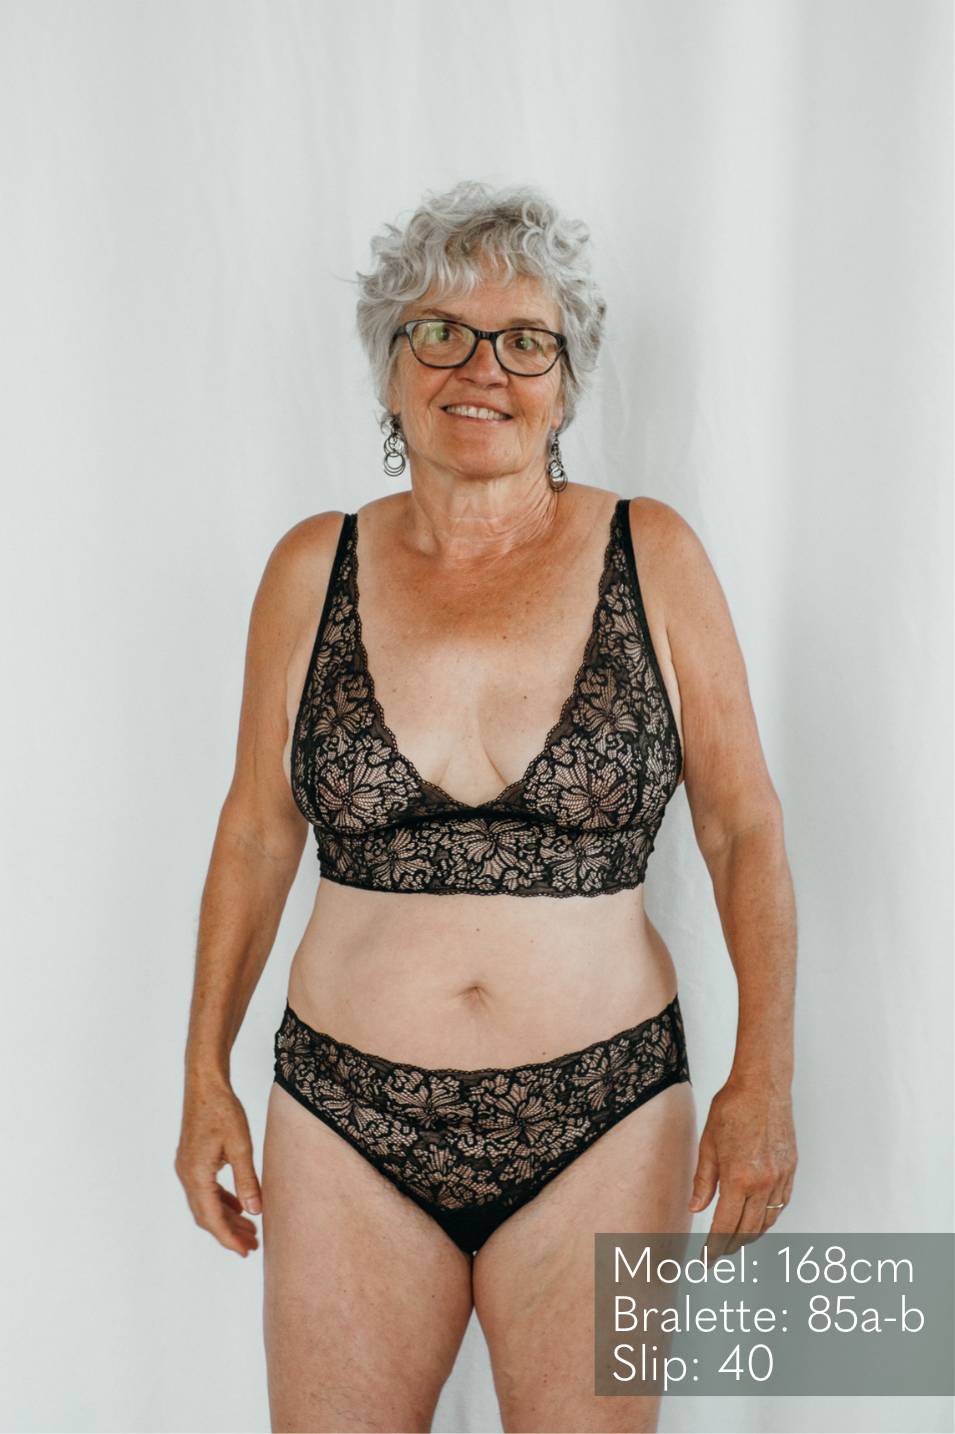 Belle Bralette: High quality black lace lingerie, full body shot.